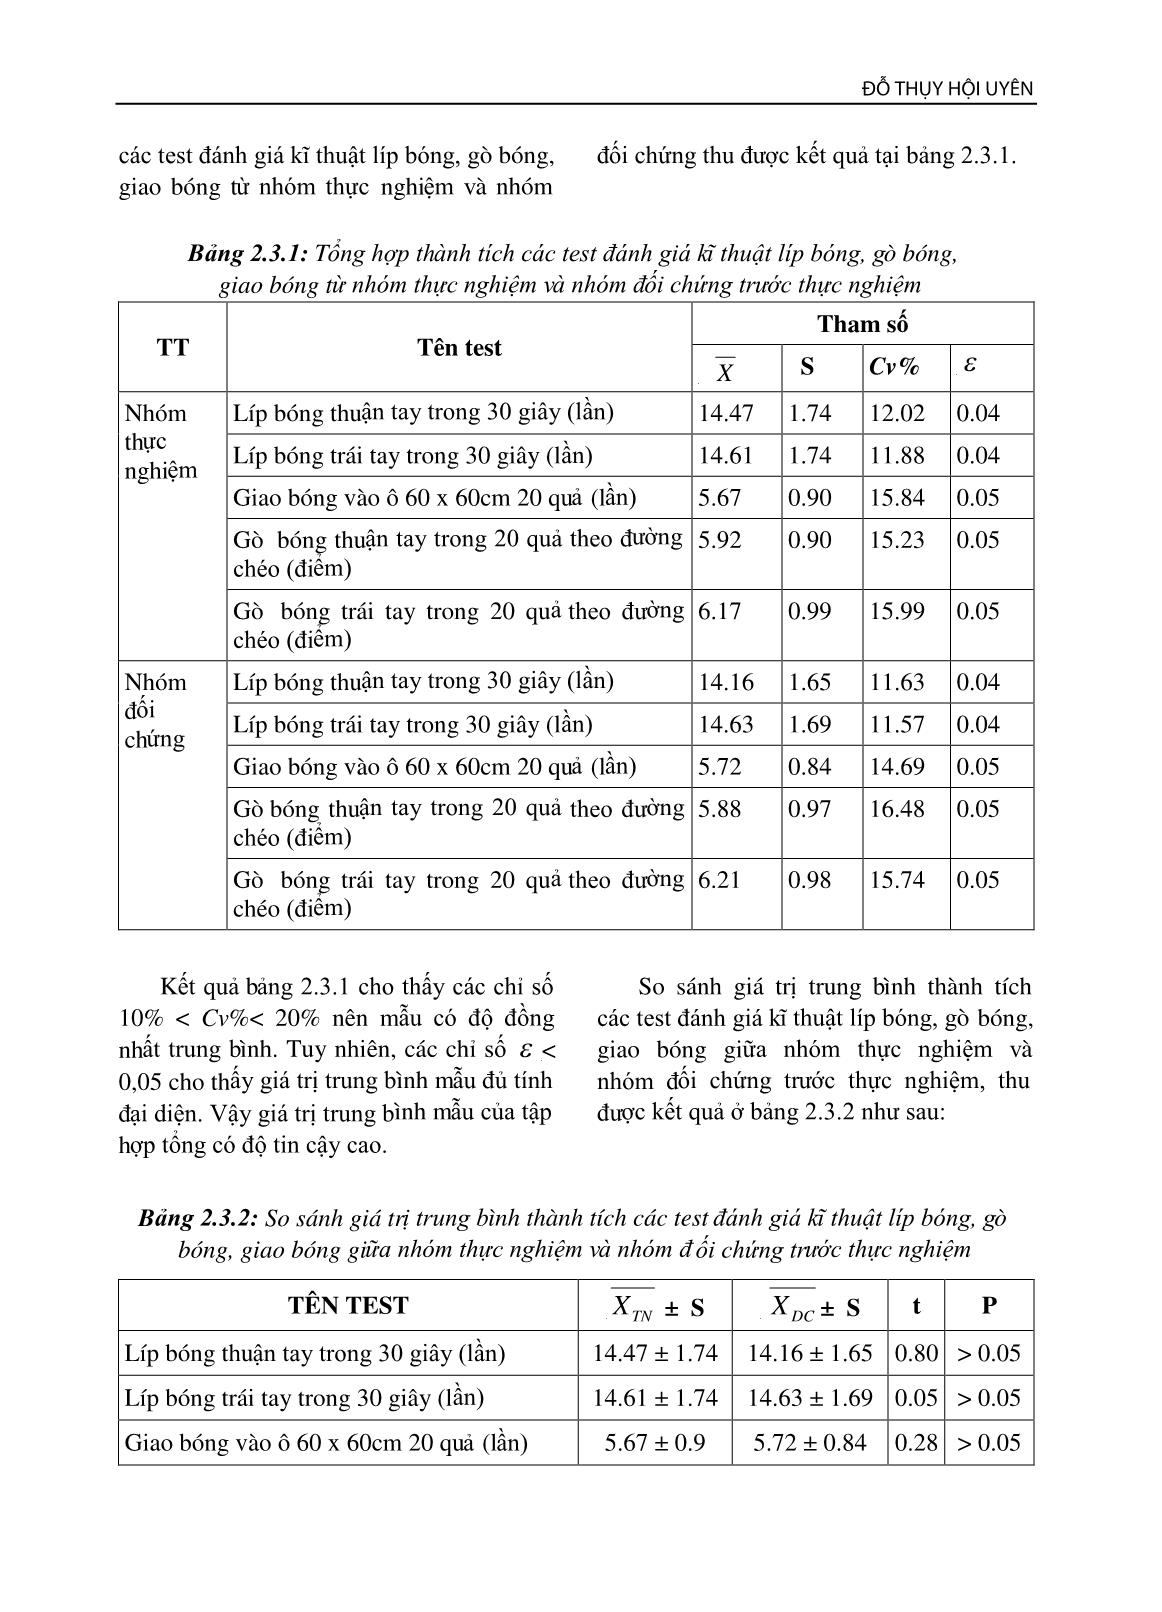 Các bài tập nâng cao kĩ thuật cơ bản bóng bàn cho sinh viên học giáo dục thể chất ở trường đại học Sài Gòn trang 7